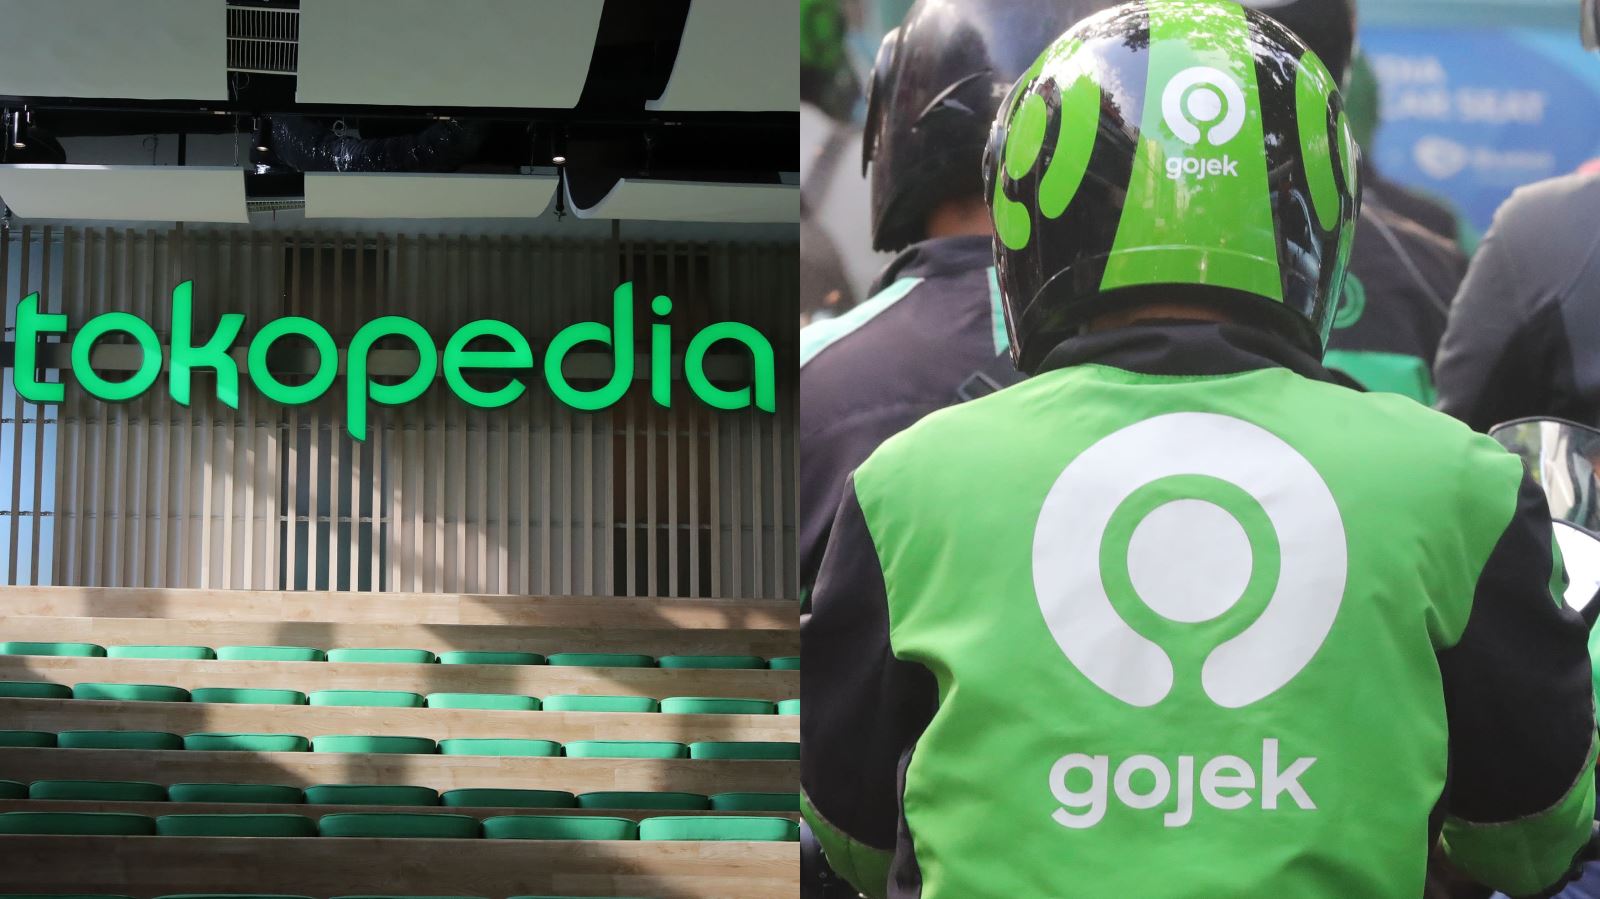 Nhìn lại Gojek trước thềm IPO: Từ công ty với 20 tài xế đến ‘siêu kỳ lân’ Đông Nam Á